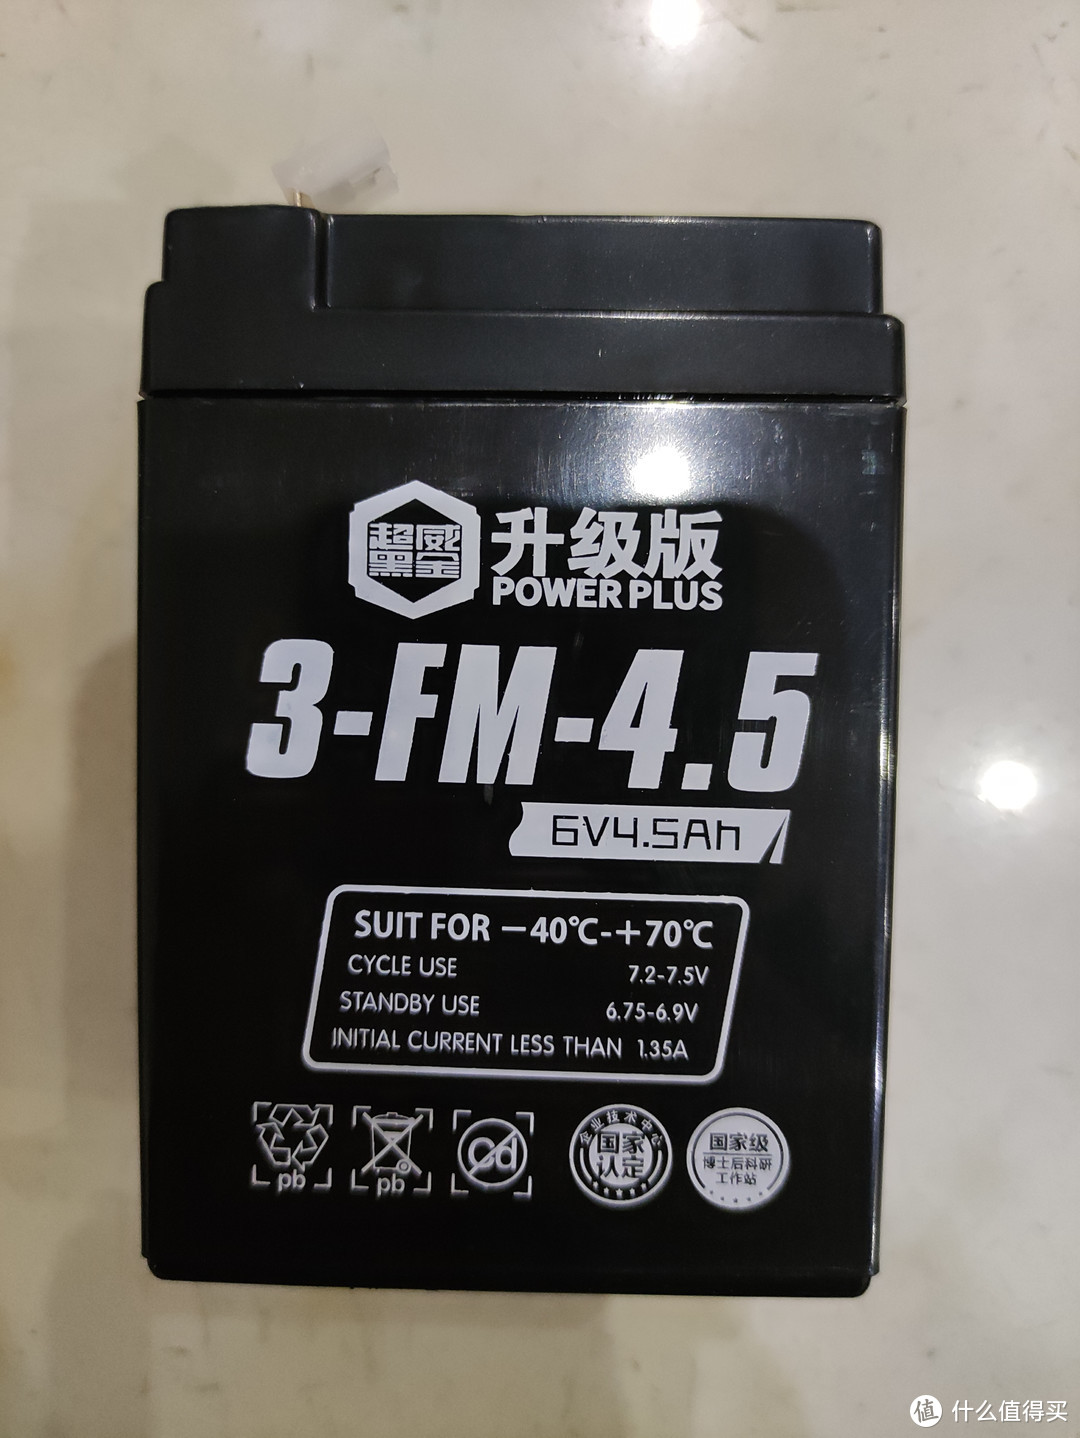 超威3-FM-4.5玩具车电池分享